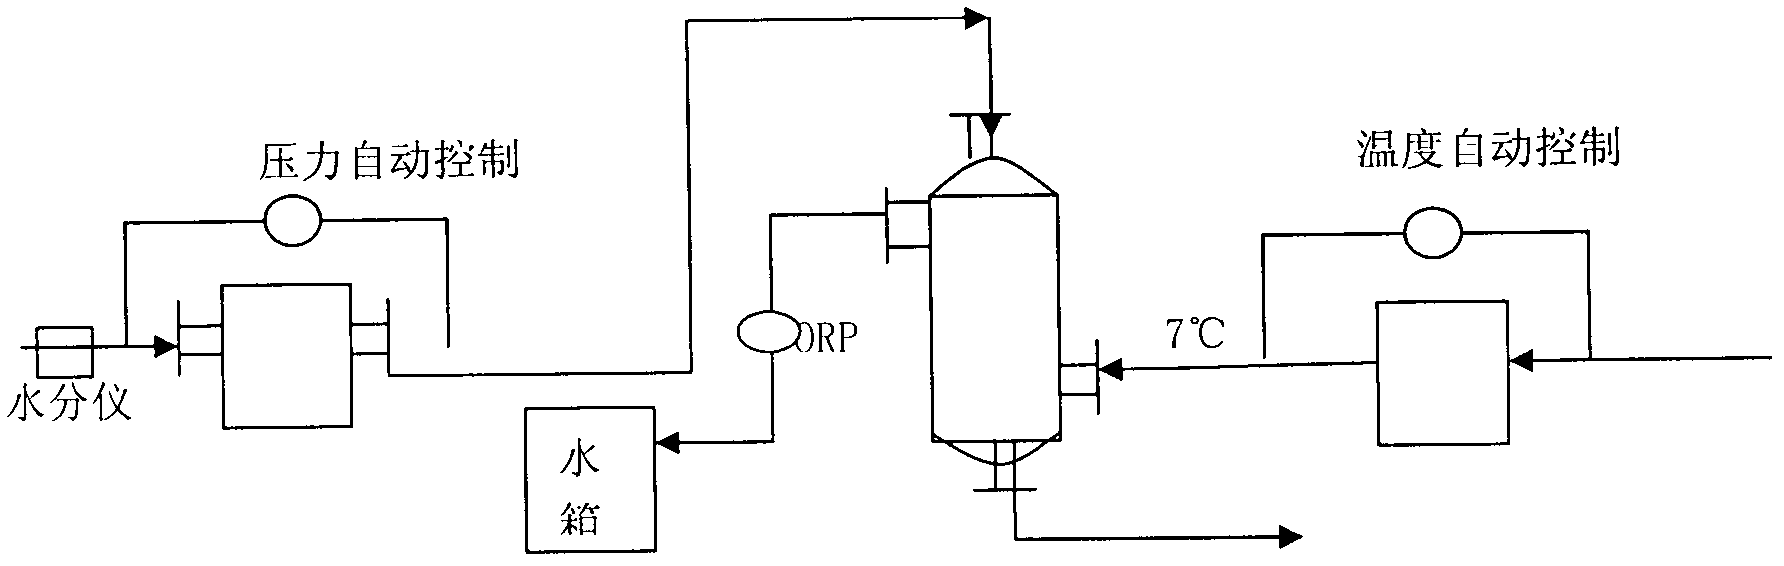 Technology for liquefying chlorine through medium-temperature and medium-pressure method